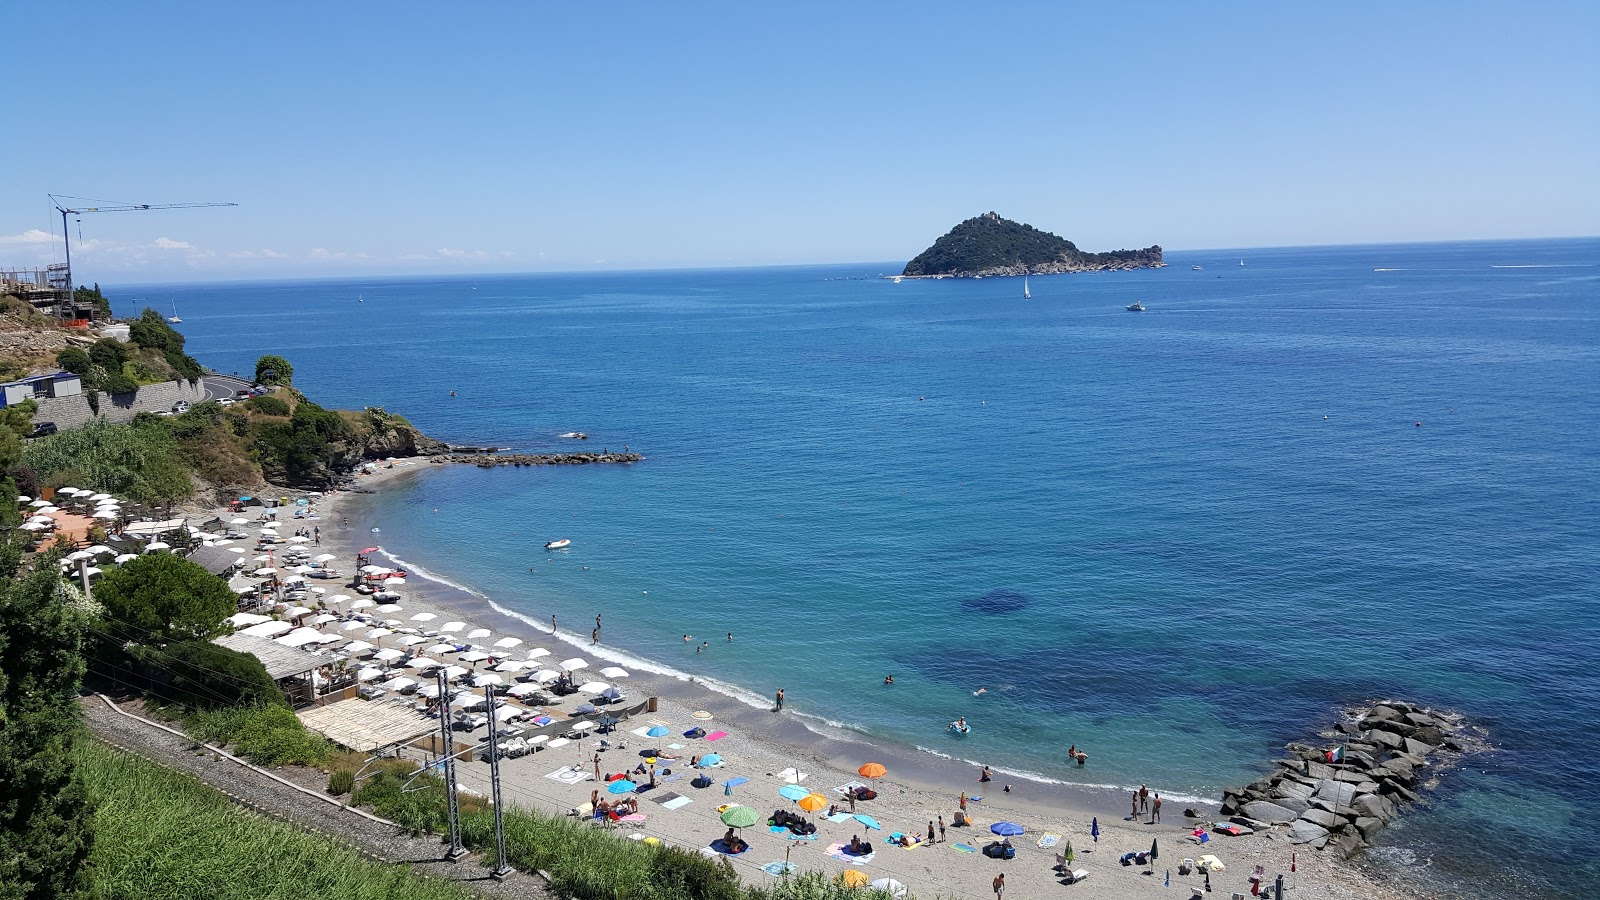 Spiaggia libera Alassio的照片 带有灰砂和卵石表面